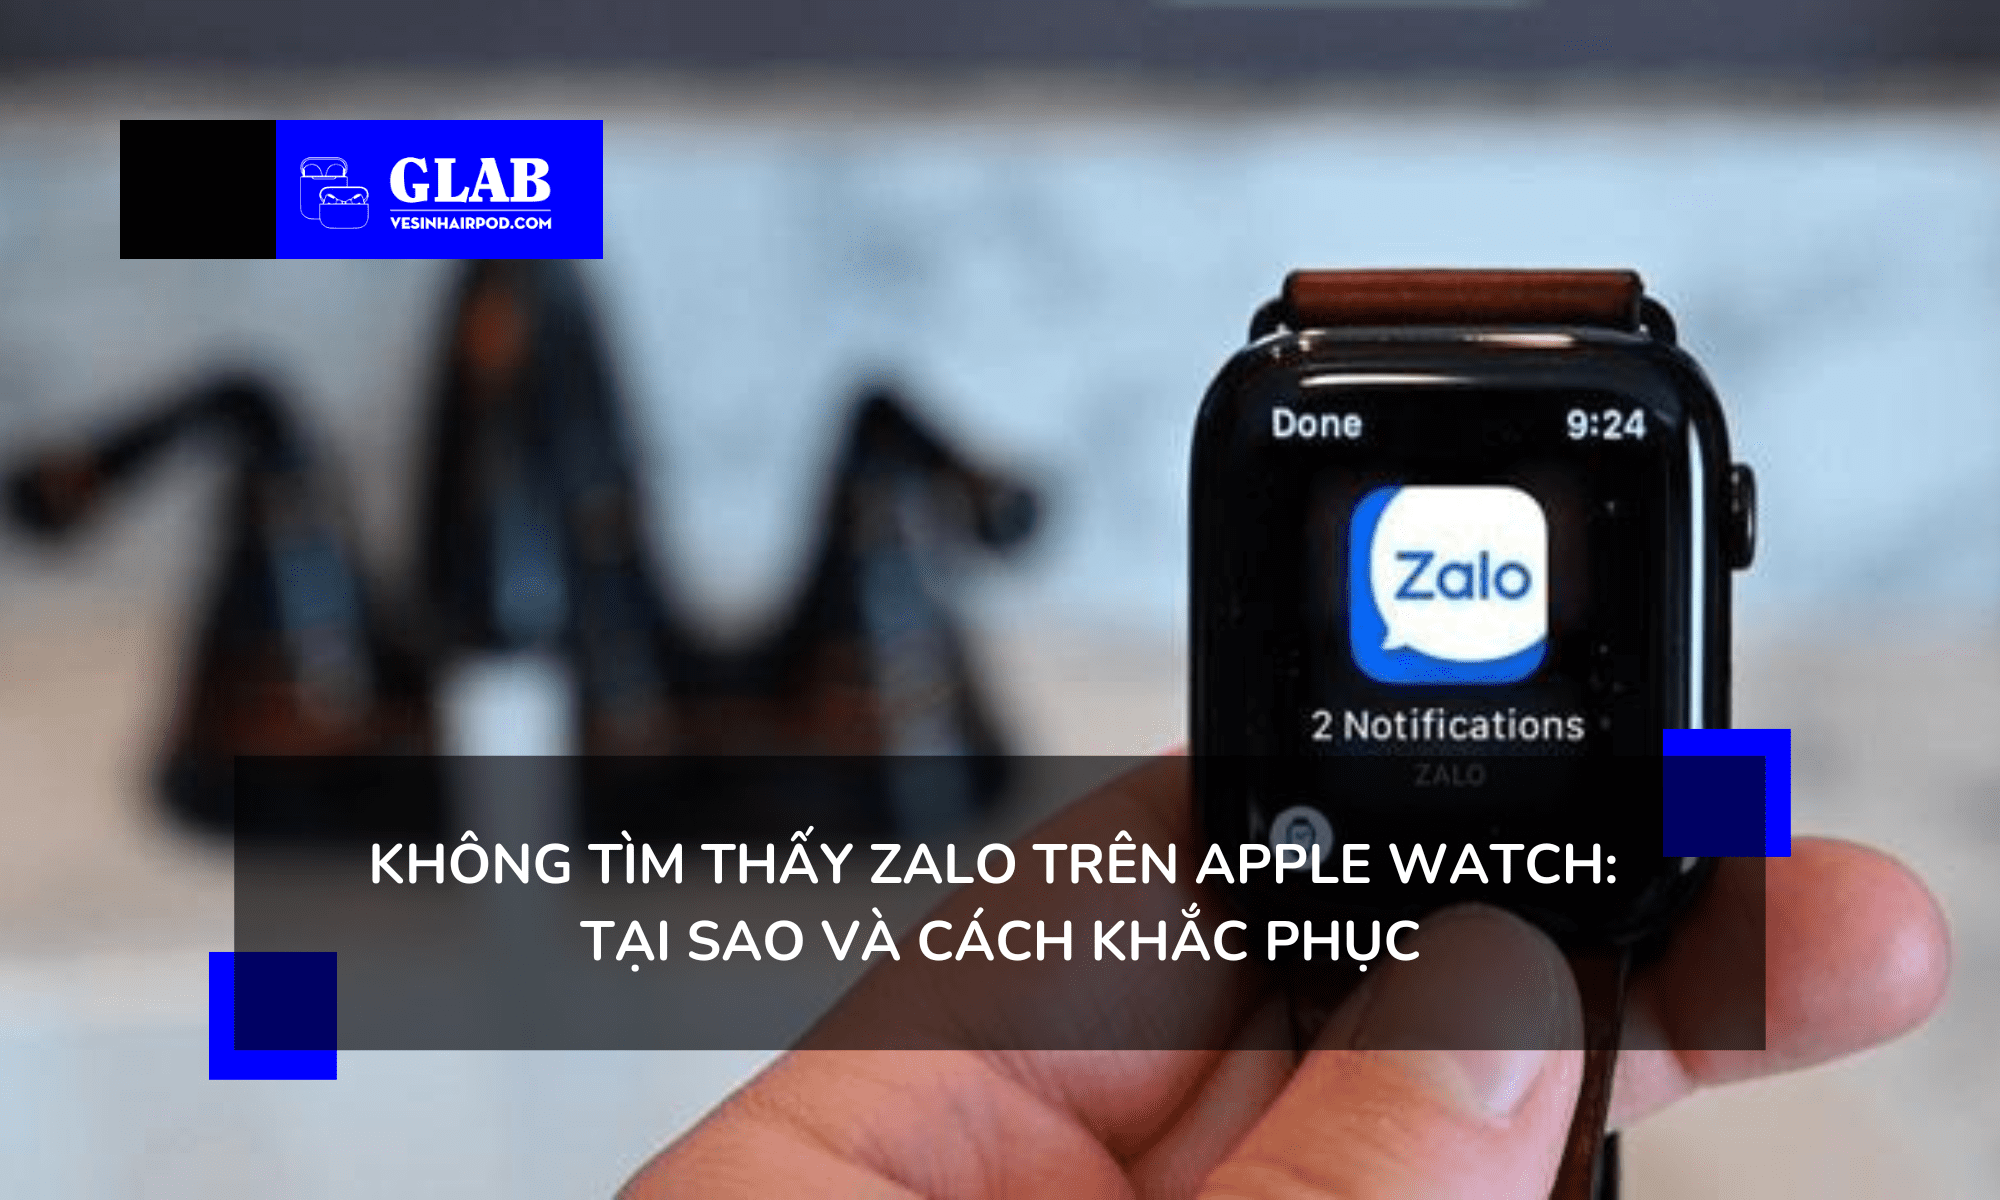 zalo-tren-apple-watch